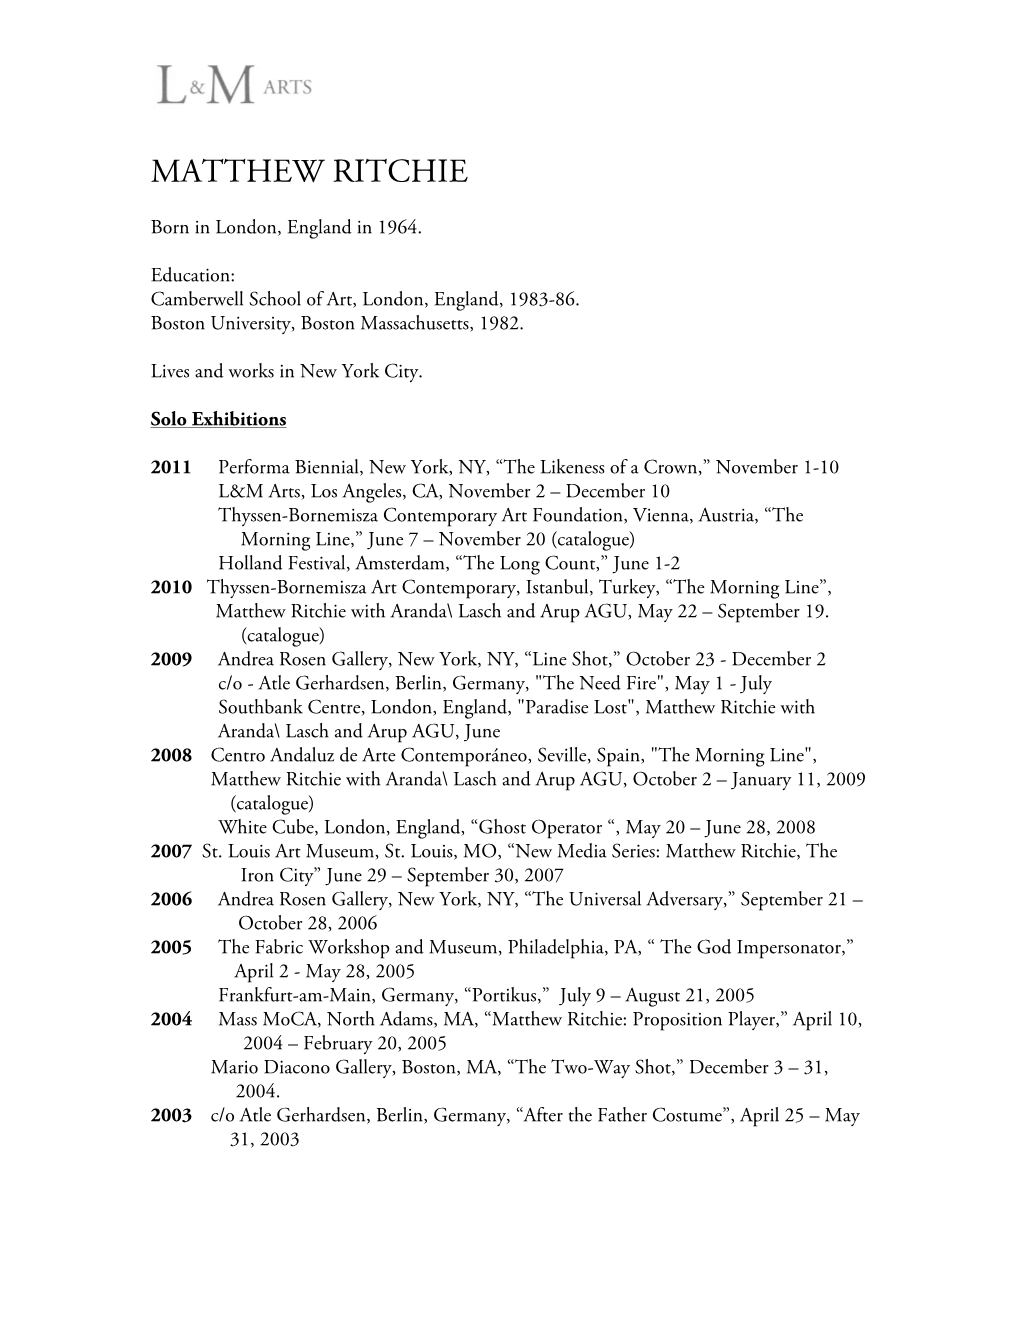 Matthew Ritchie